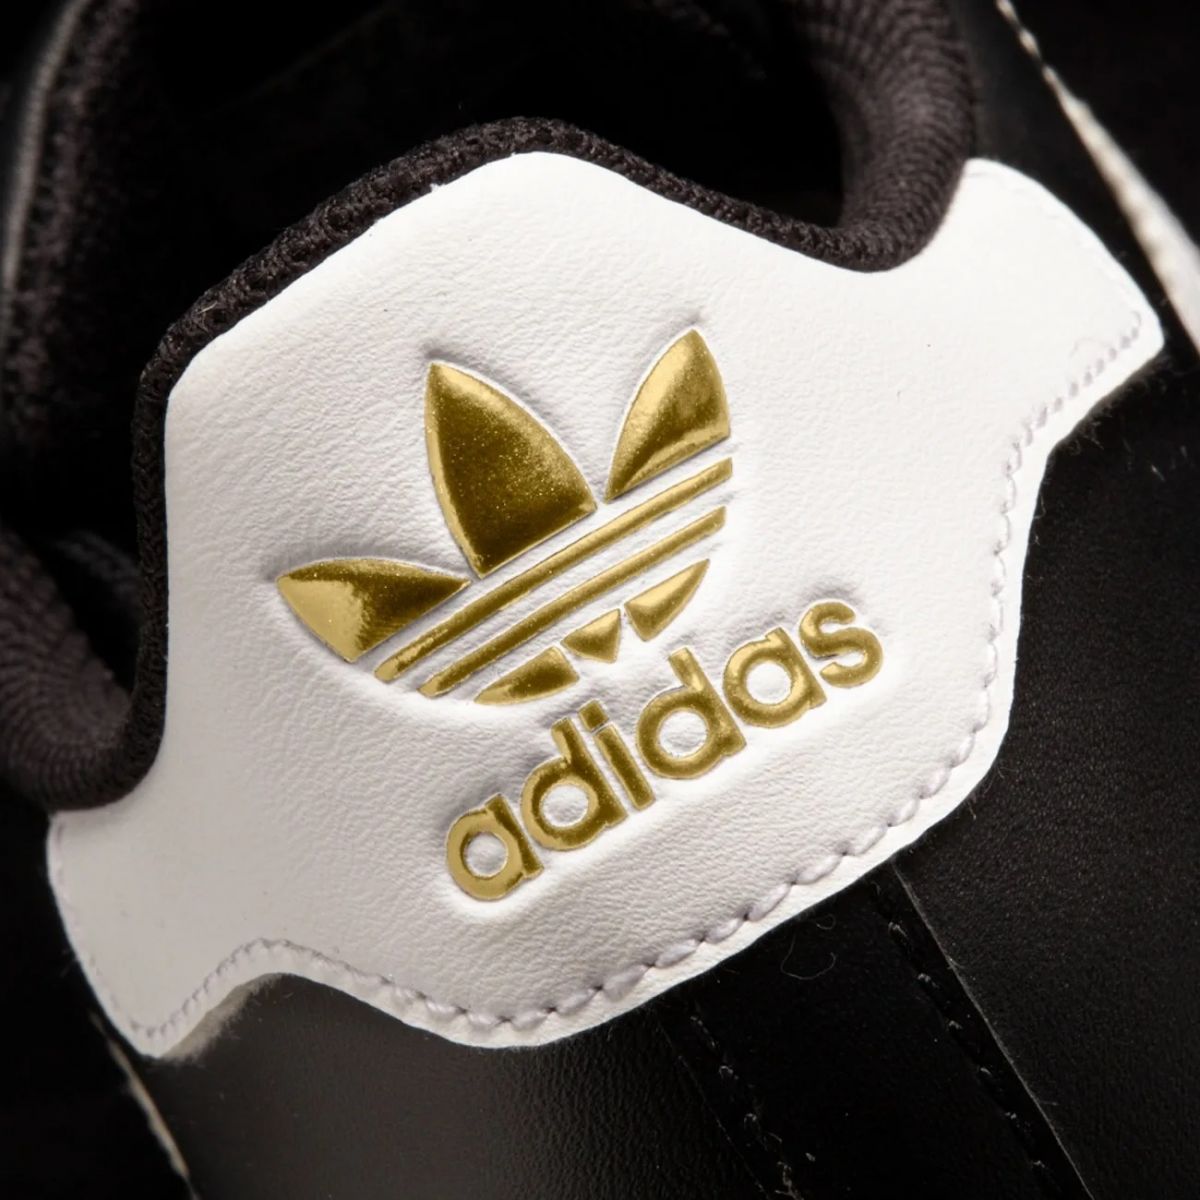 Logo Adidas Originals